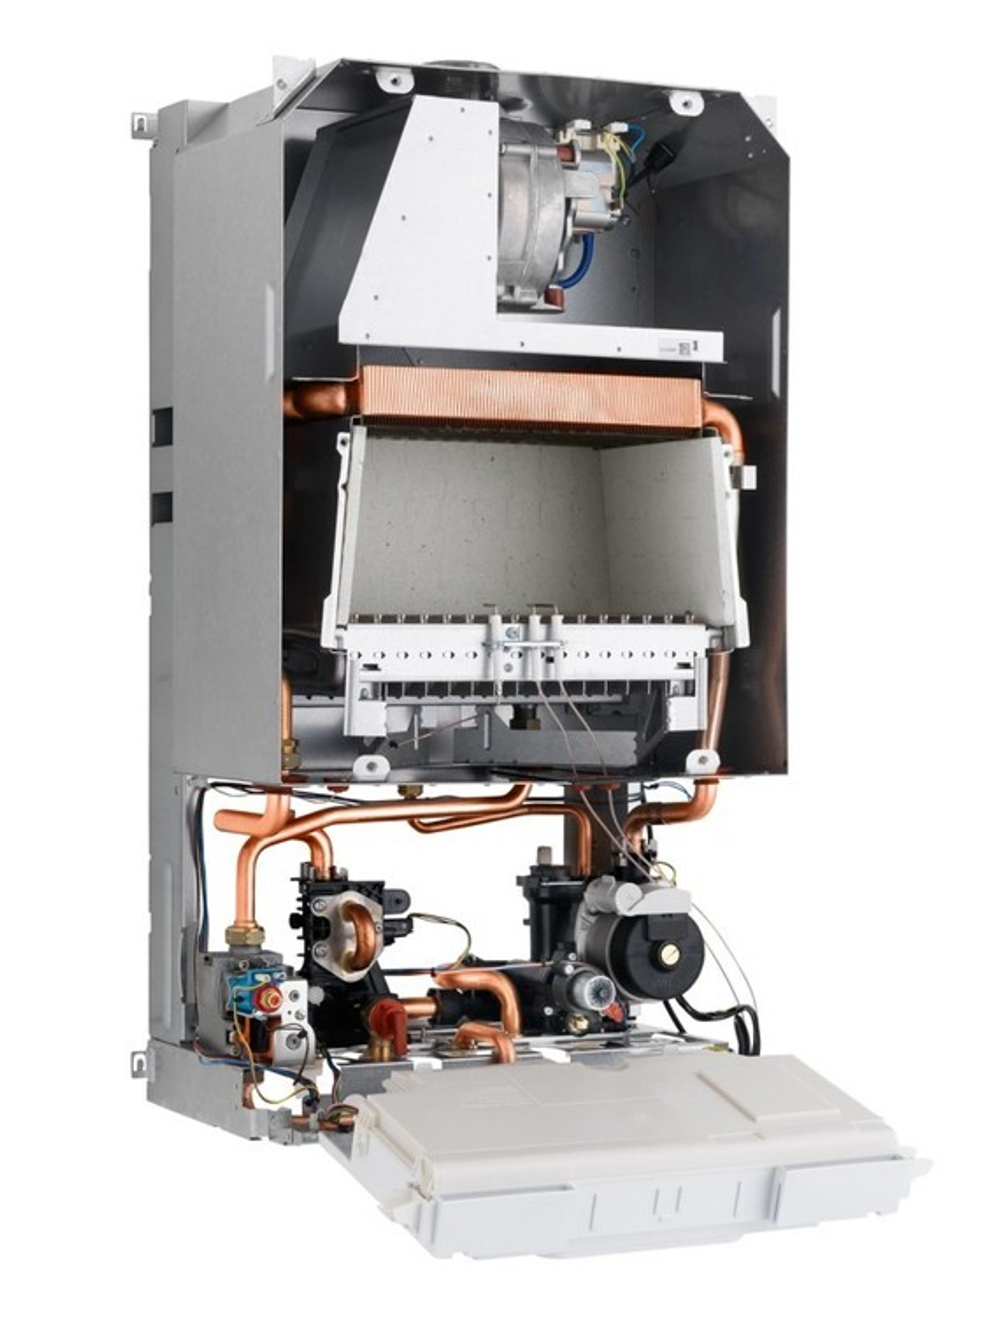 Газовый котел Protherm Пантера 25 KTO (2015) 25 кВт одноконтурный